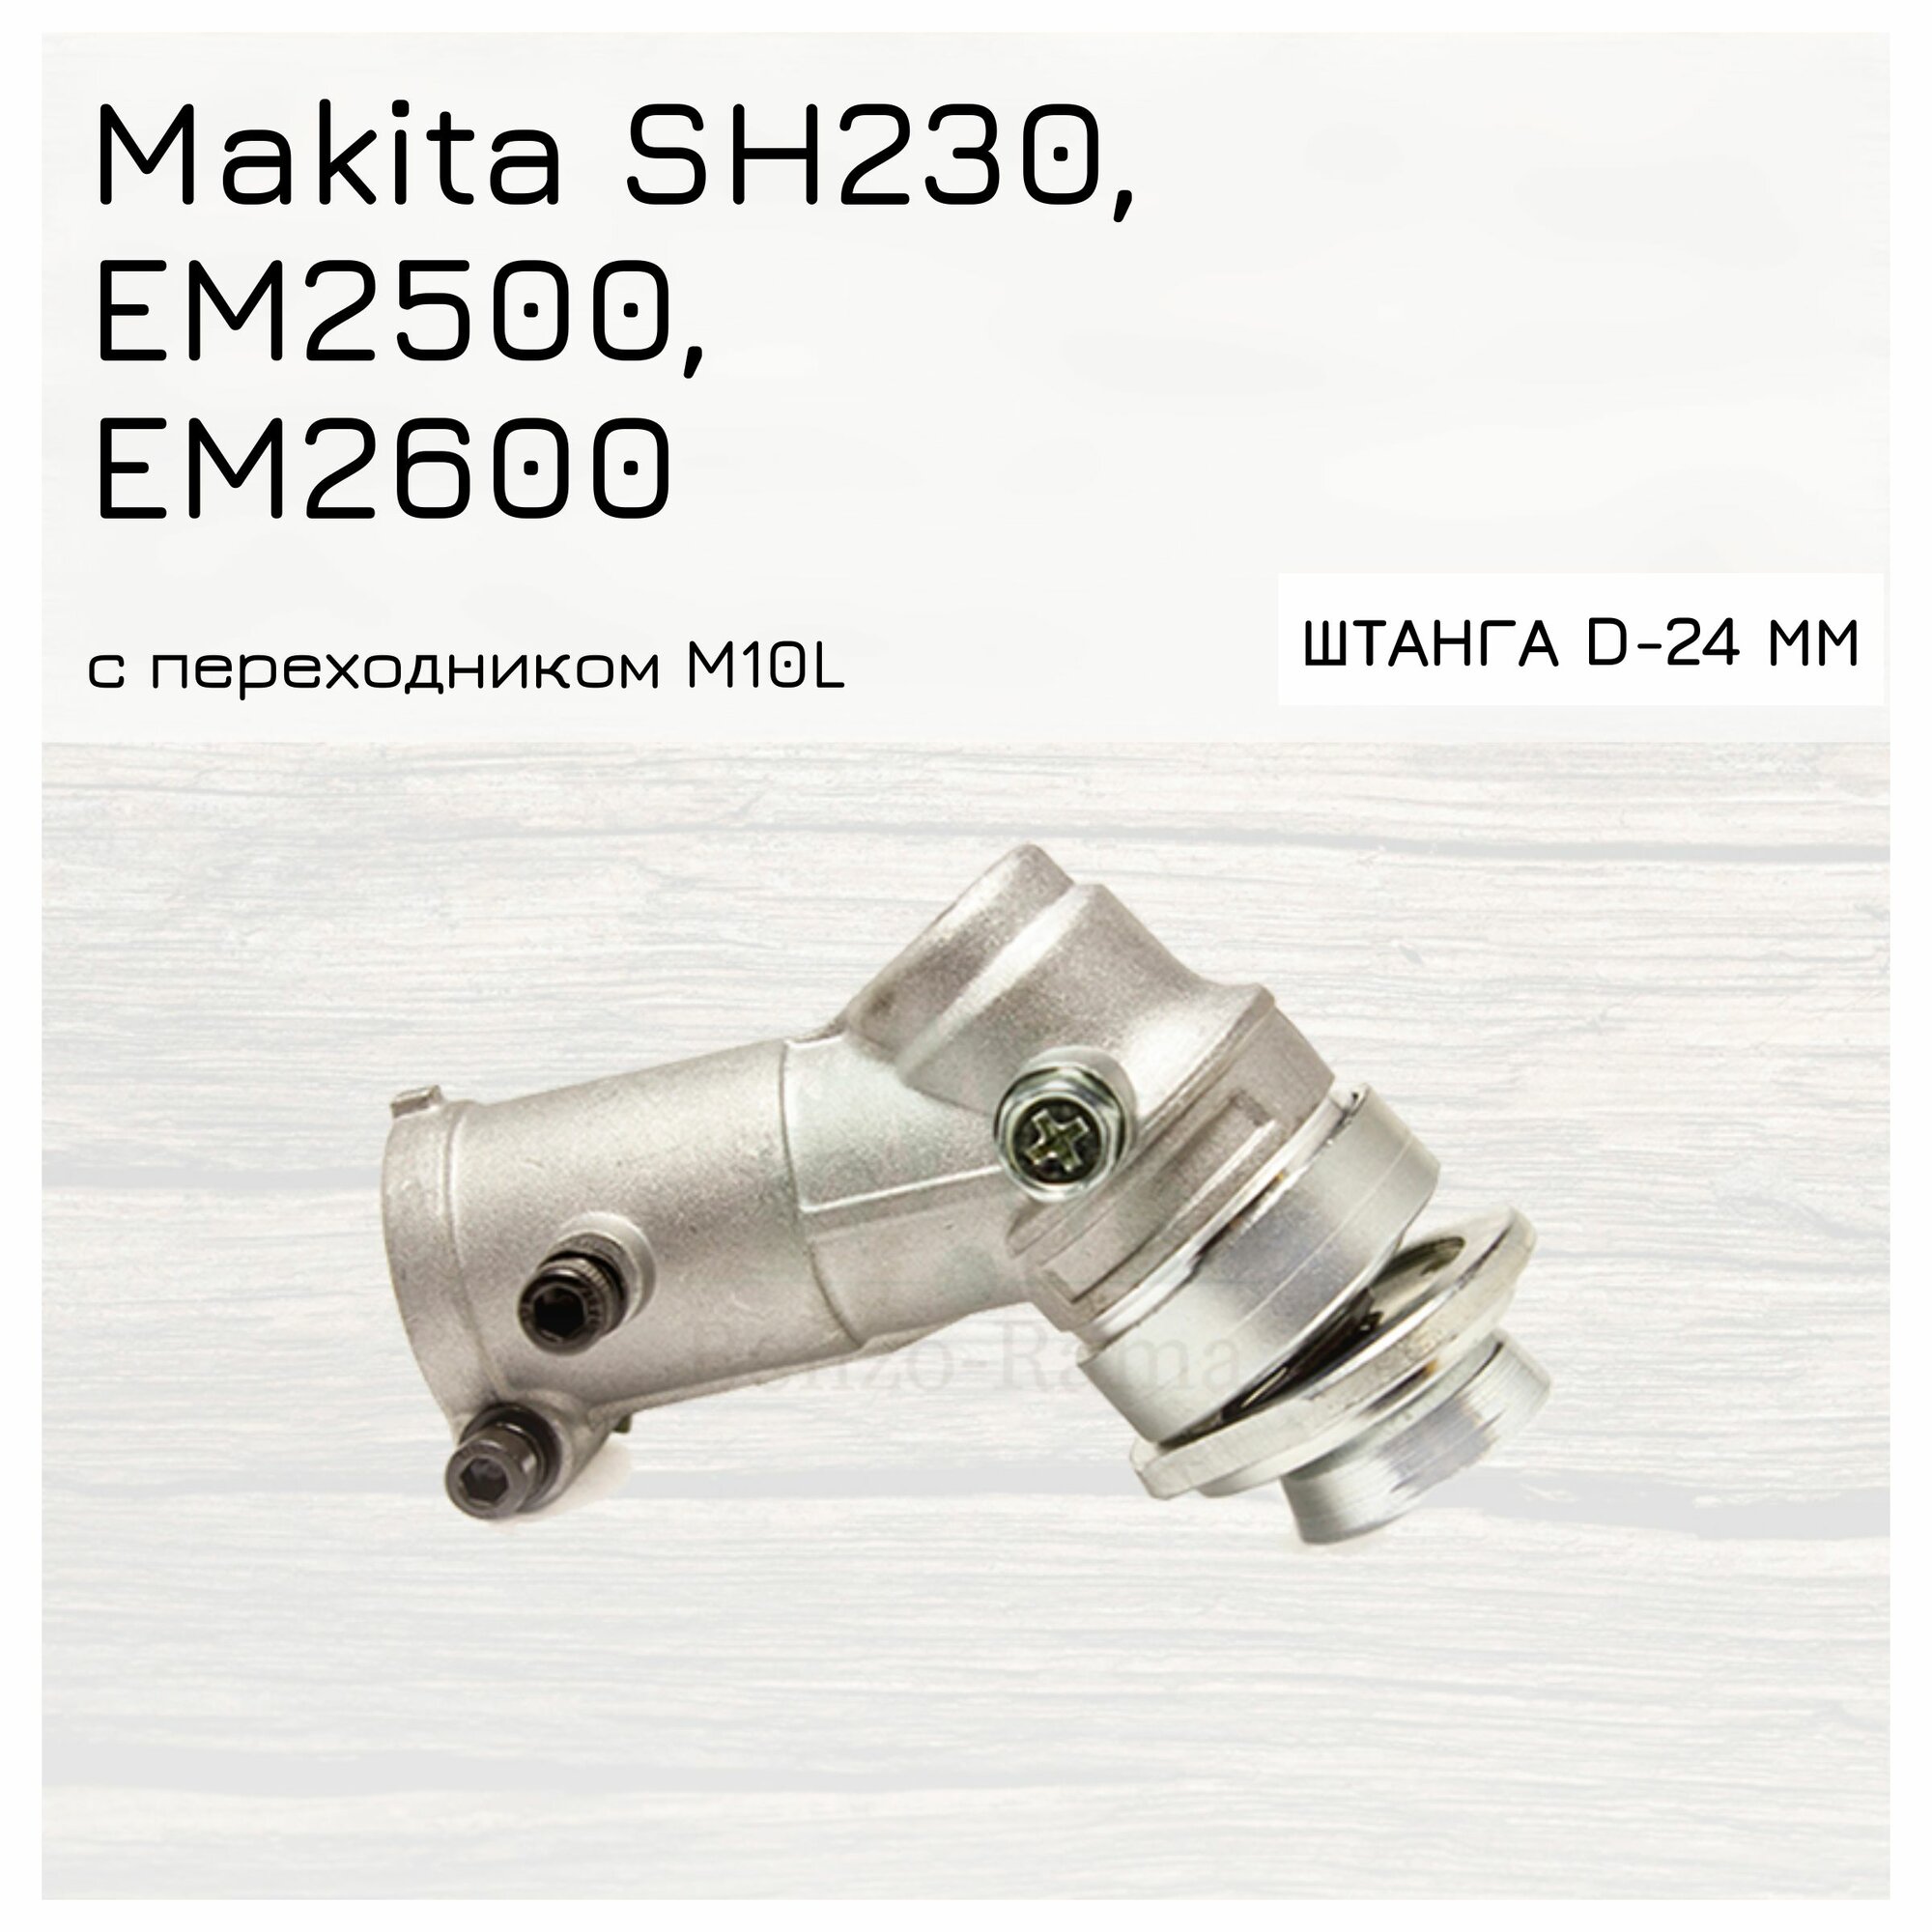 Редуктор в сборе для мотокос Makita SH 230/ EM 2500/ EM 2600 штанга d-24 mm посадка- 10 шлицов с переходником M10L